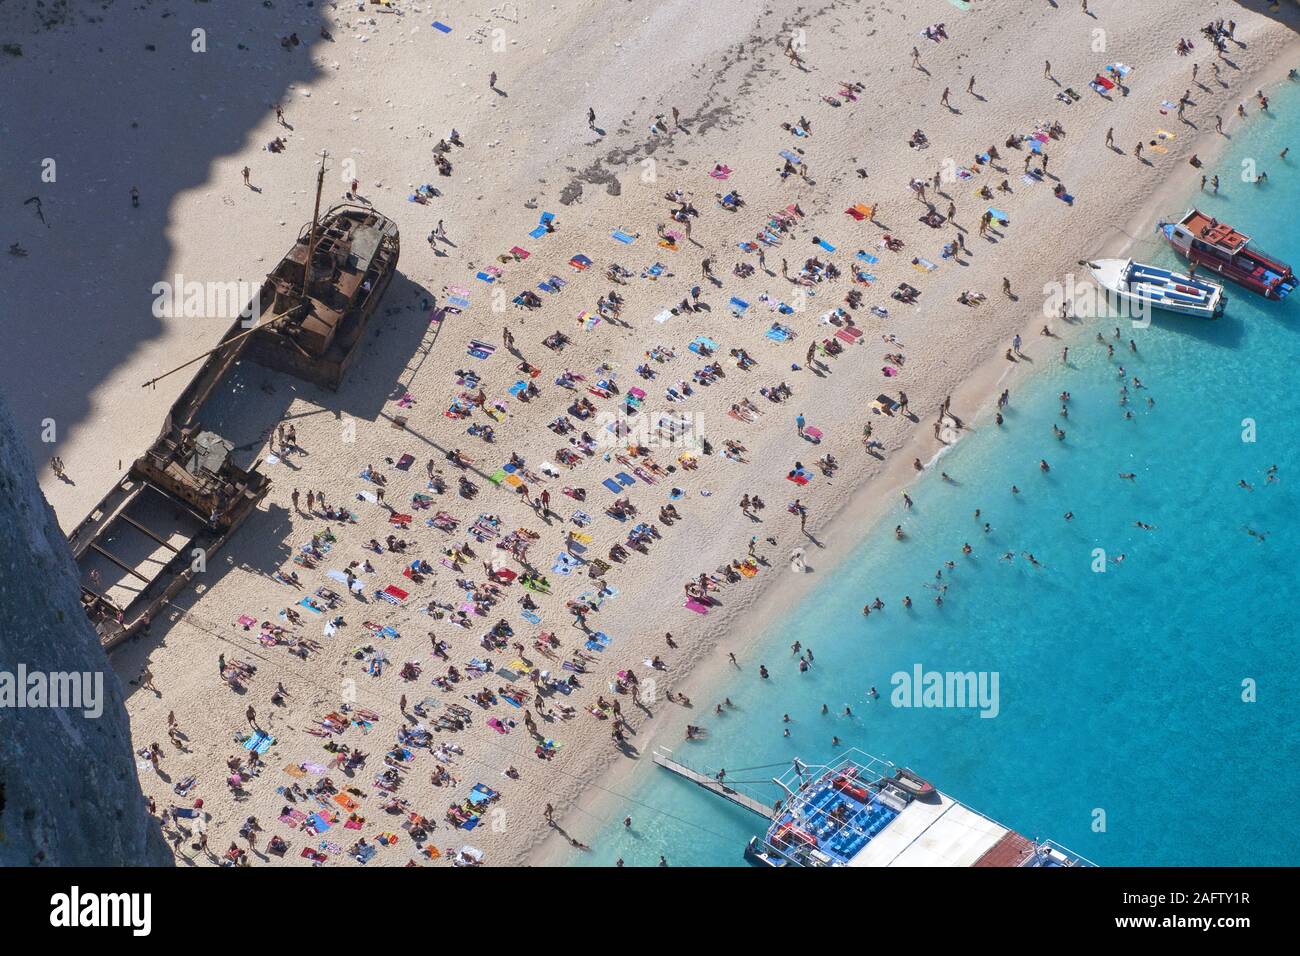 Shipwreck Bay, l'une des plus belles plages de Grèce, l'île de Zakynthos, Grèce Banque D'Images